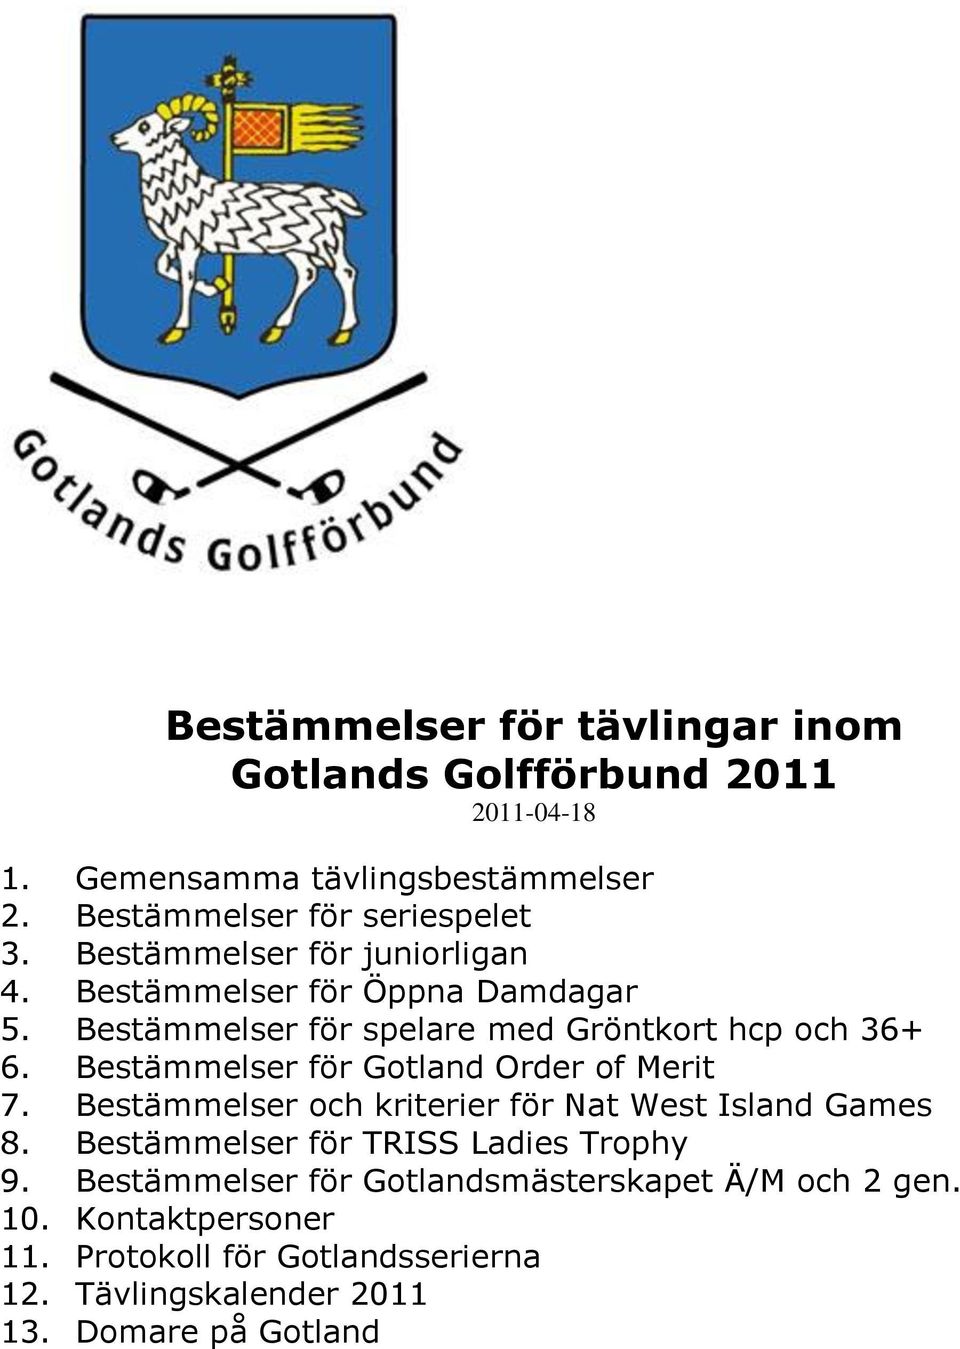 Bestämmelser för Gotland Order of Merit 7. Bestämmelser och kriterier för Nat West Island Games 8. Bestämmelser för TRISS Ladies Trophy 9.